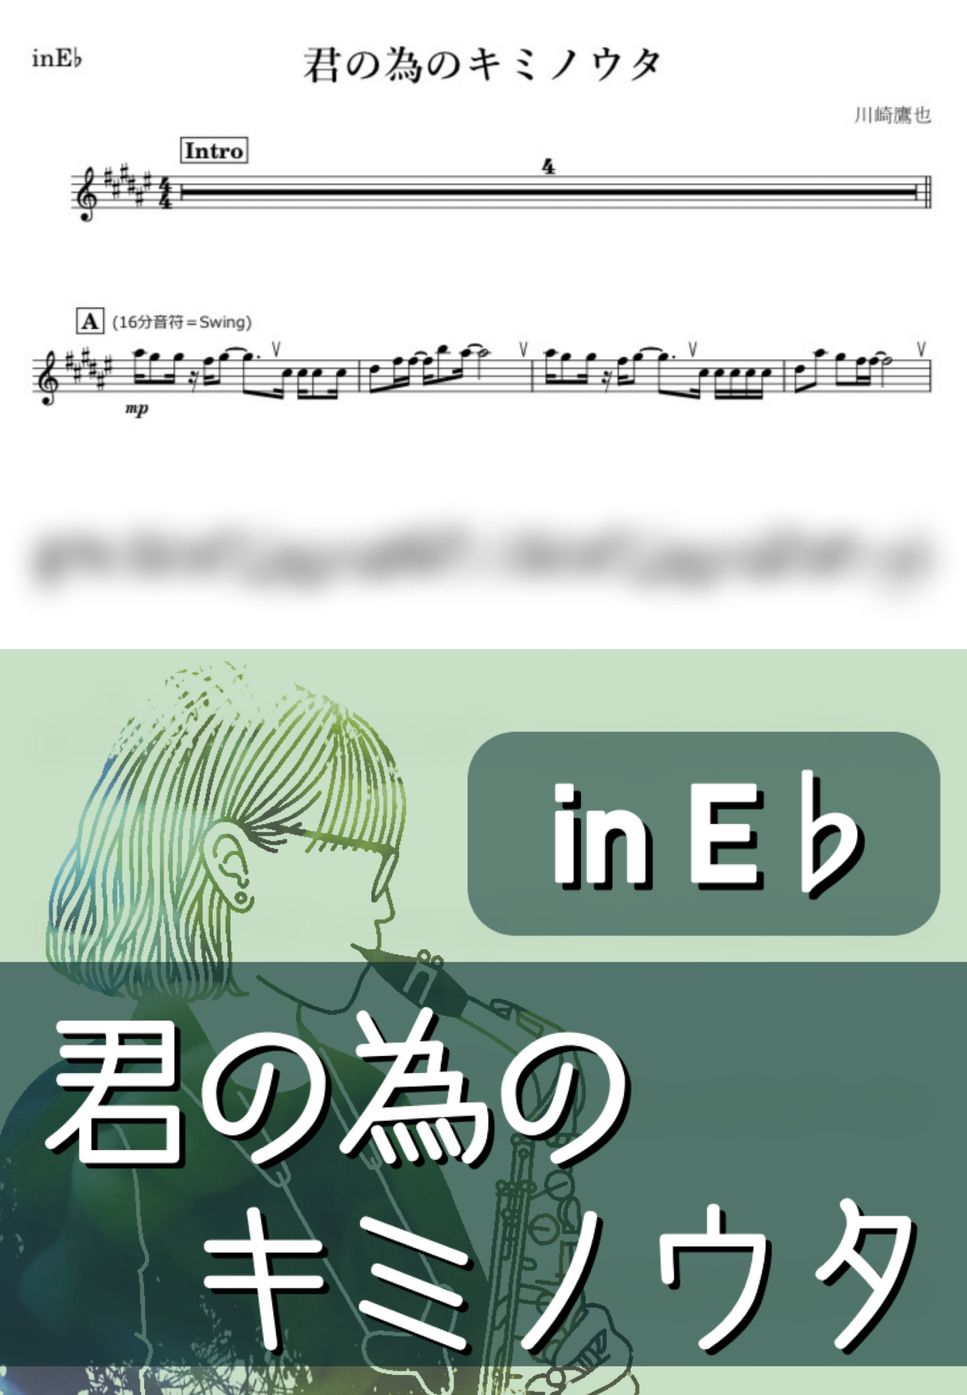 川崎鷹也 - 君の為のキミノウタ (E♭) by kanamusic